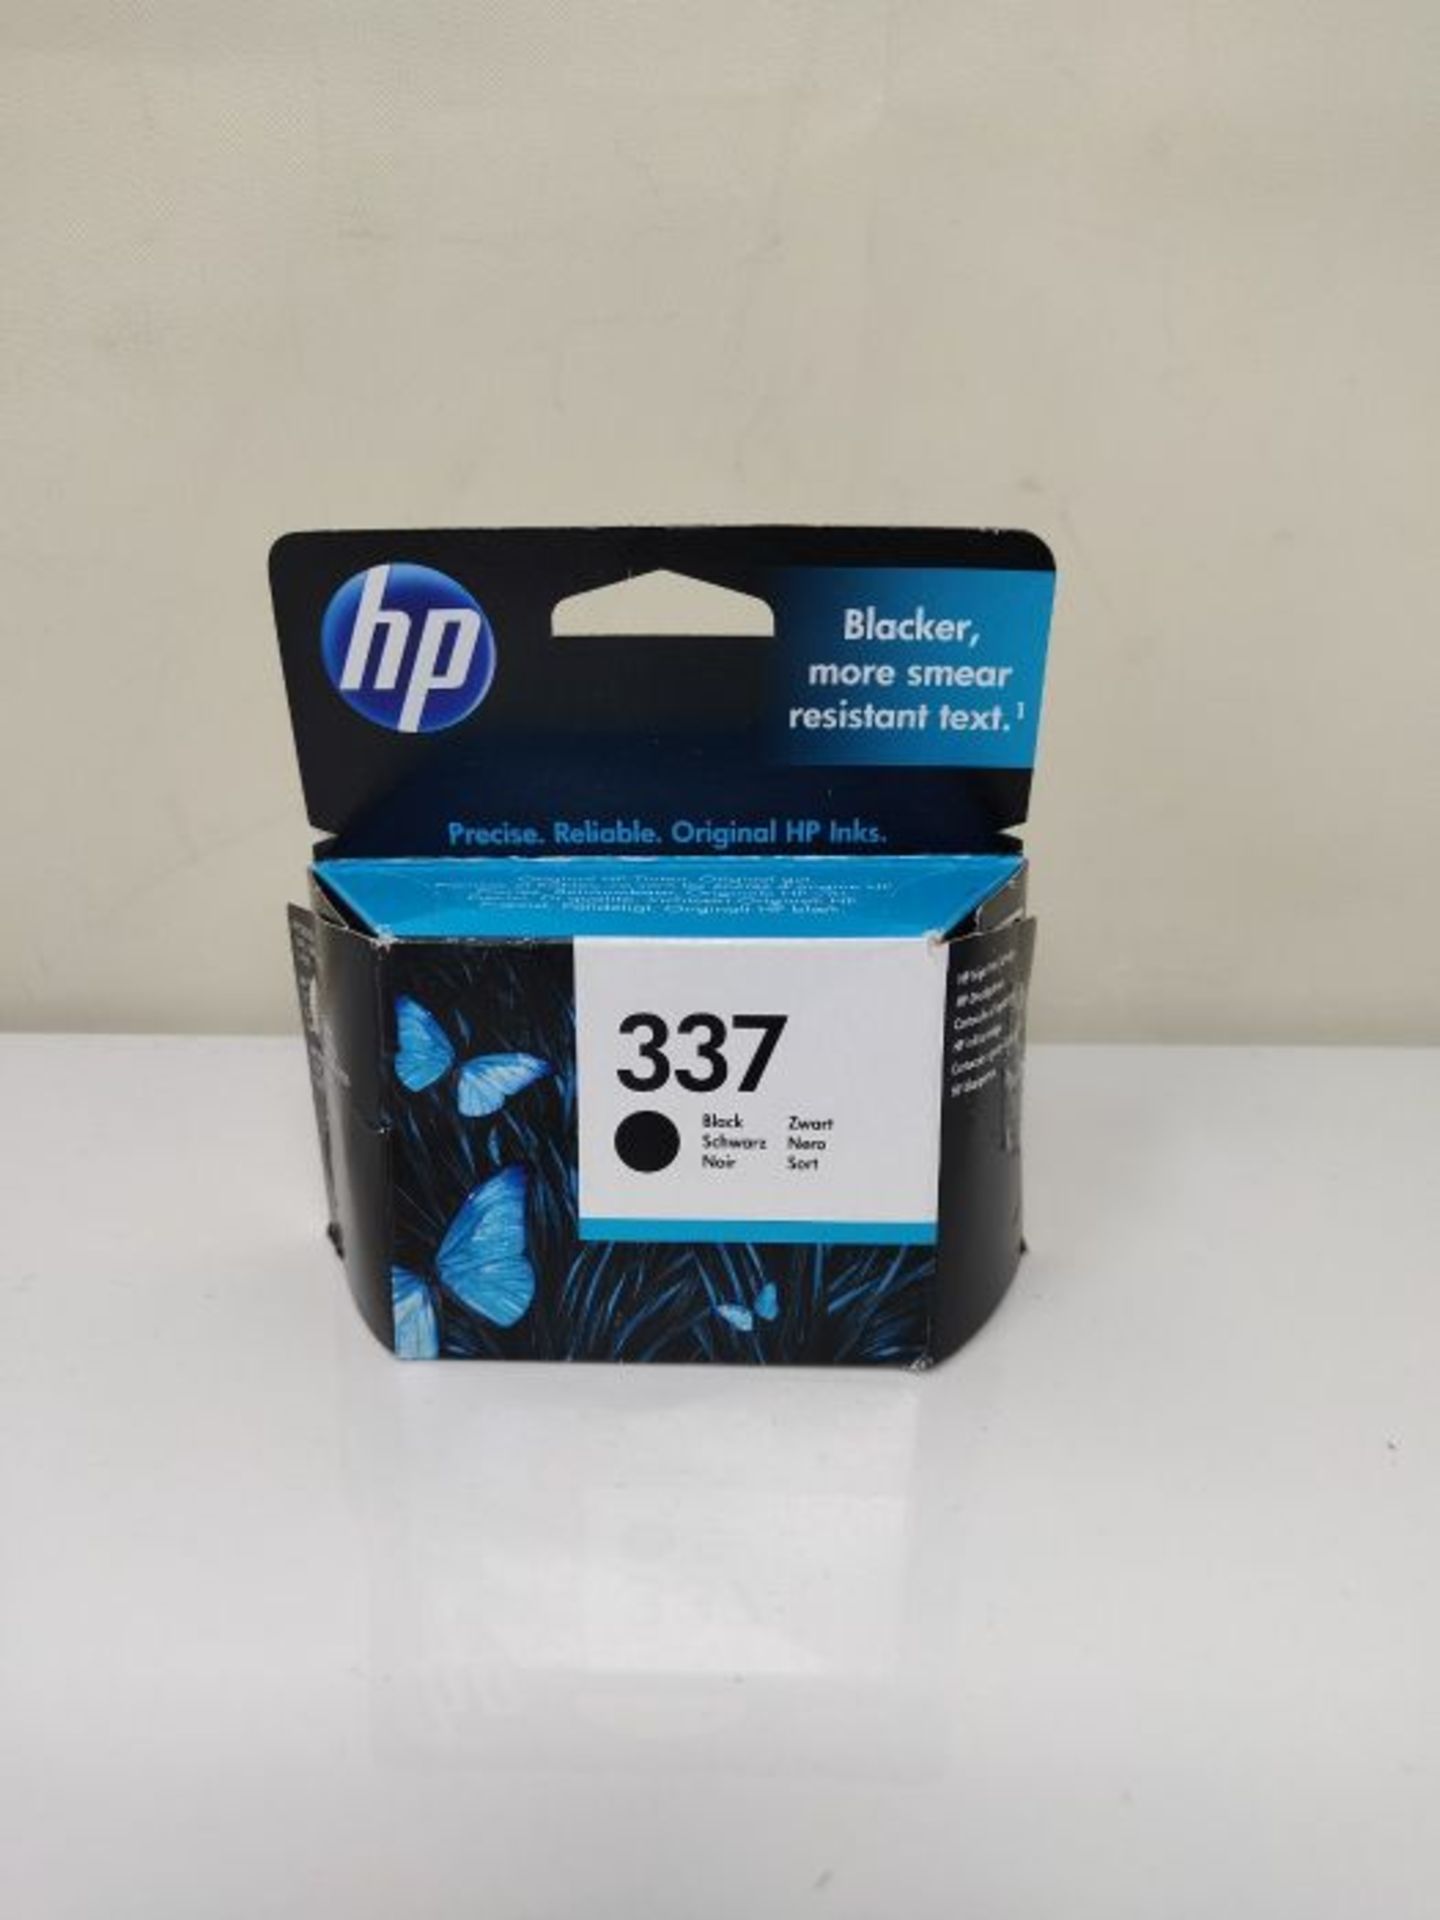 HP C9364EE 337 Black Original Ink Cartridge, Single Pack - Image 2 of 3